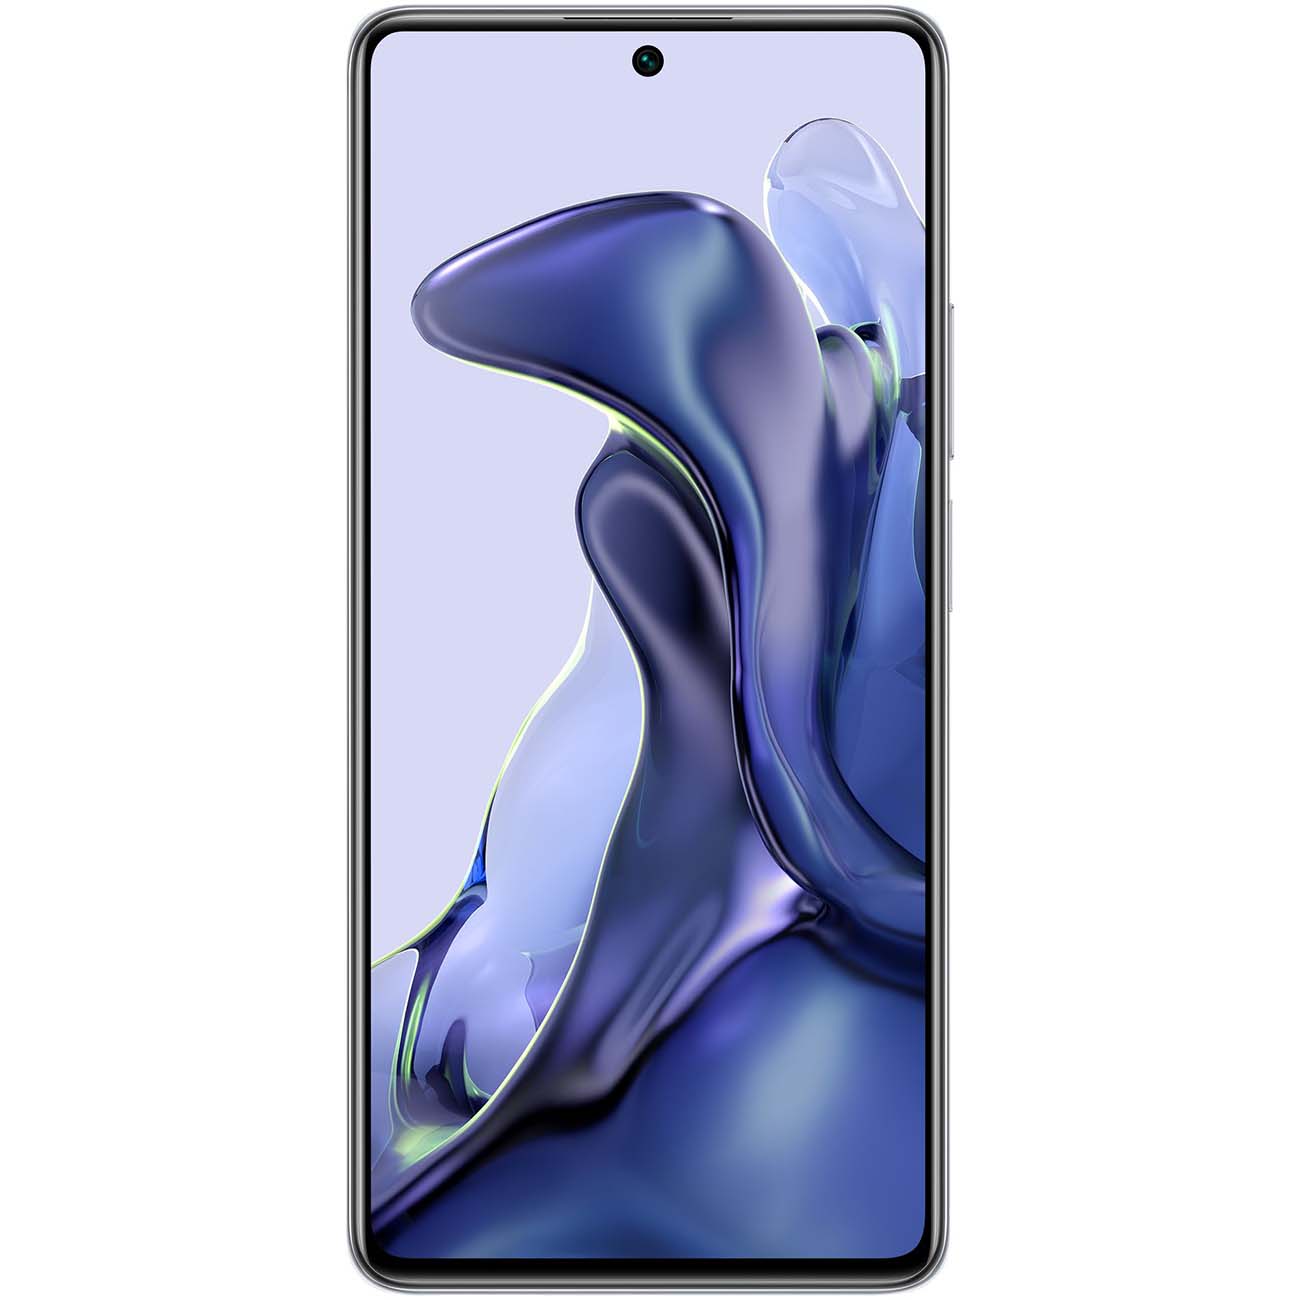 Купить смартфон xiaomi 11t 8gb+256gb blue Смартфоны в официальном магазине Apple, Samsung, Xiaomi. iPixel.ru Купить, заказ, кредит, рассрочка, отзывы,  характеристики, цена,  фотографии, в подарок.